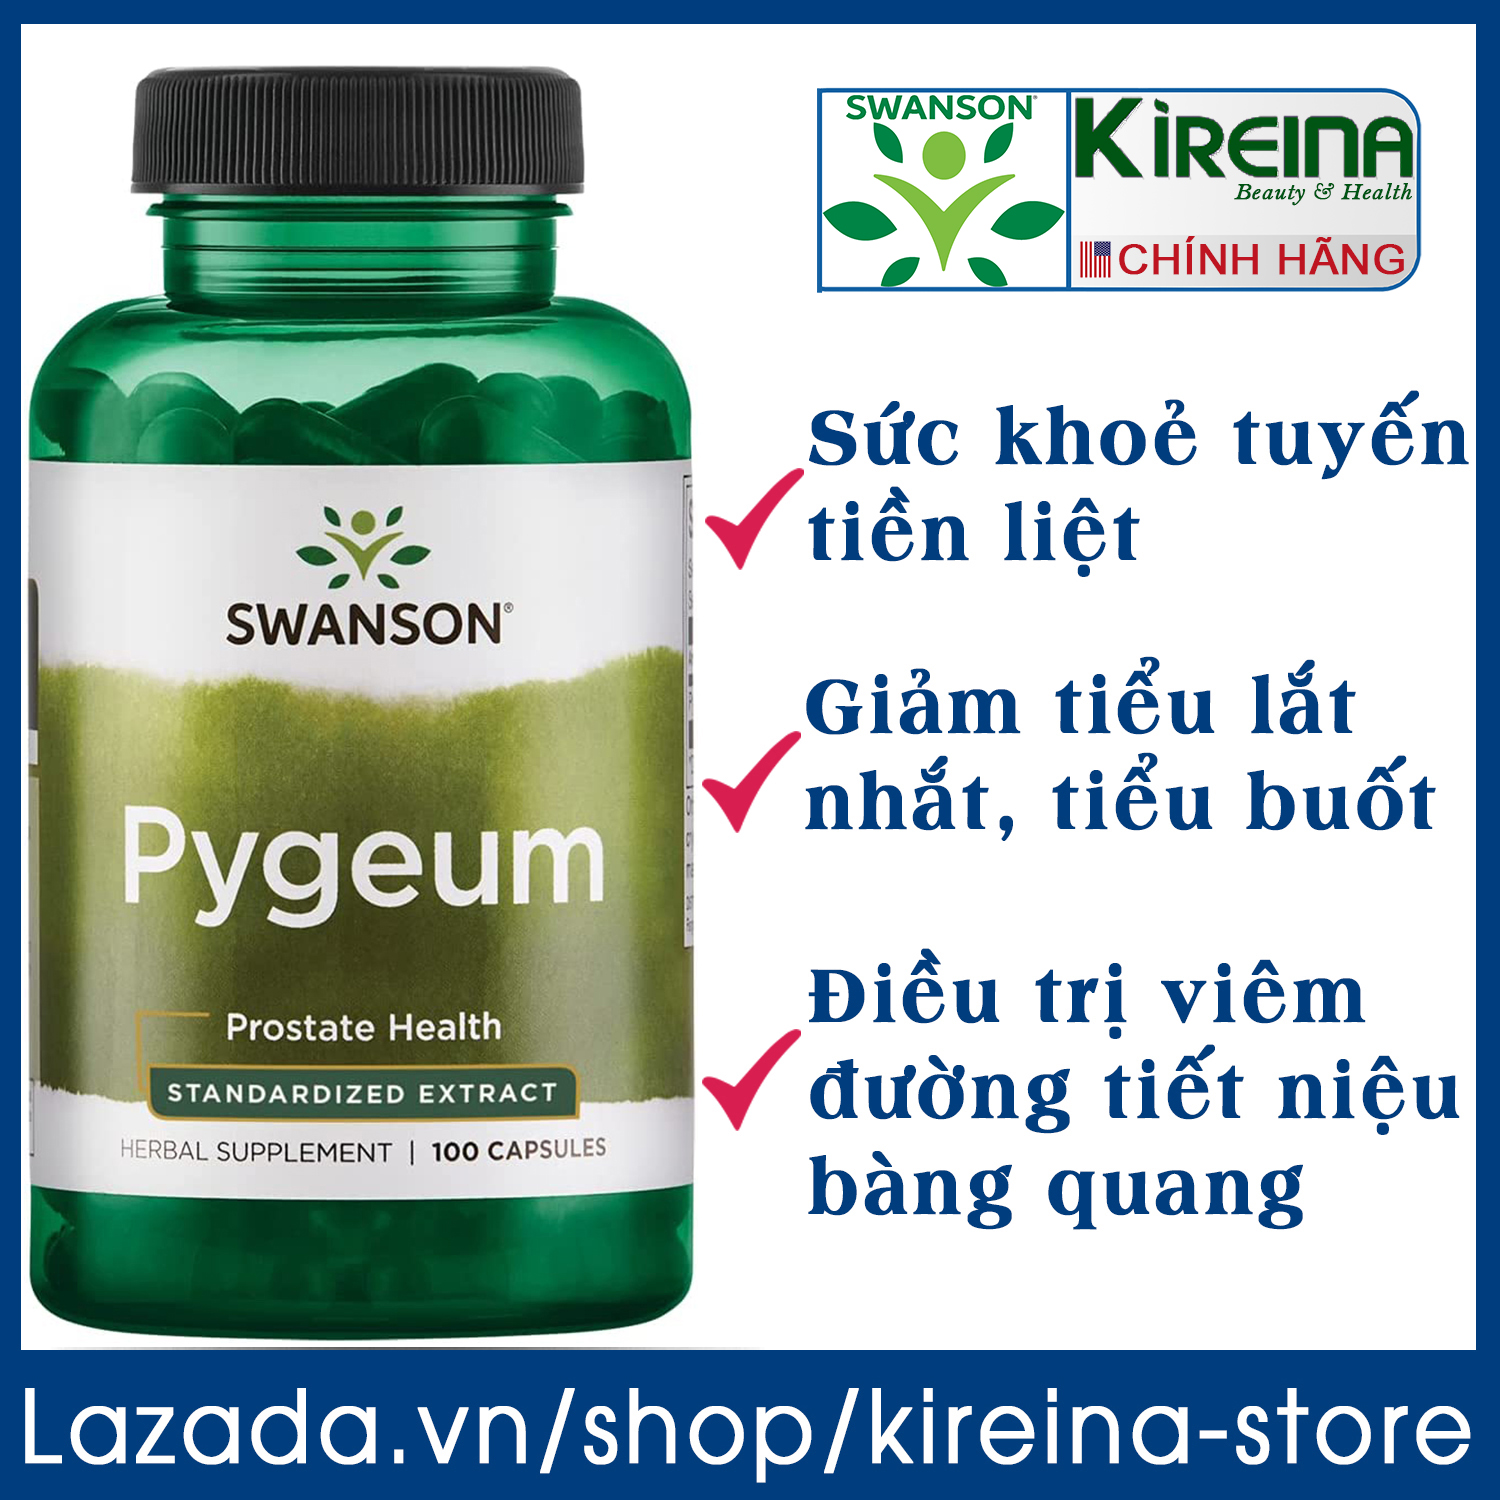 Viên uống Swanson Pygeum hỗ trợ sức khoẻ tuyến tiền liệt đường tiết niệu